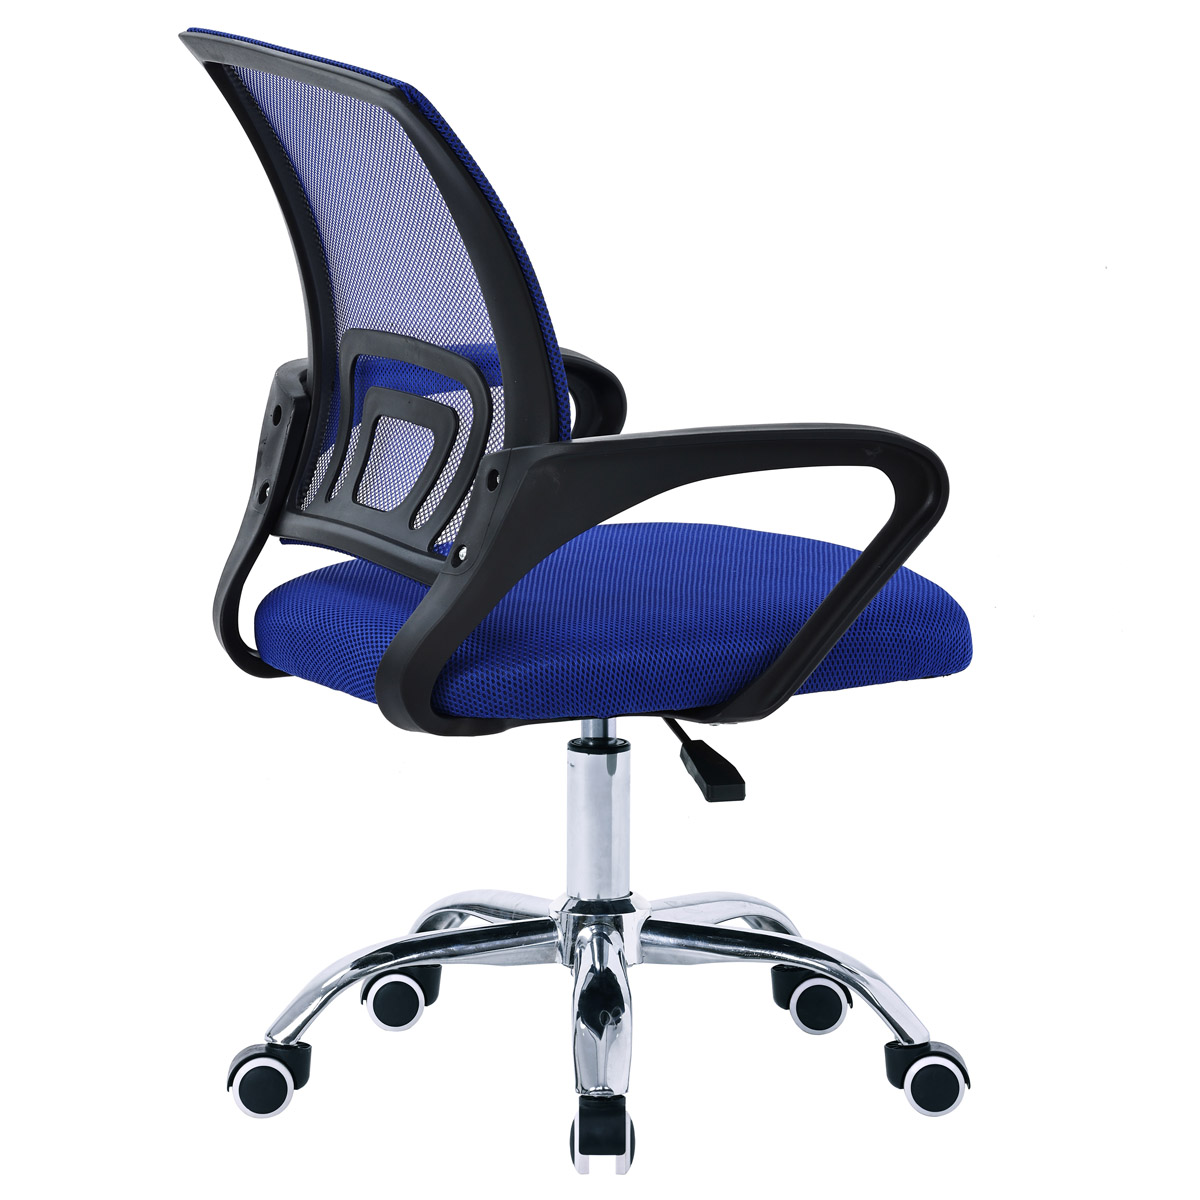 Kancelářská židle, potah modrá látka MESH a síťovina MESH, výškově nastavitelná, kovový chromovaný kříž